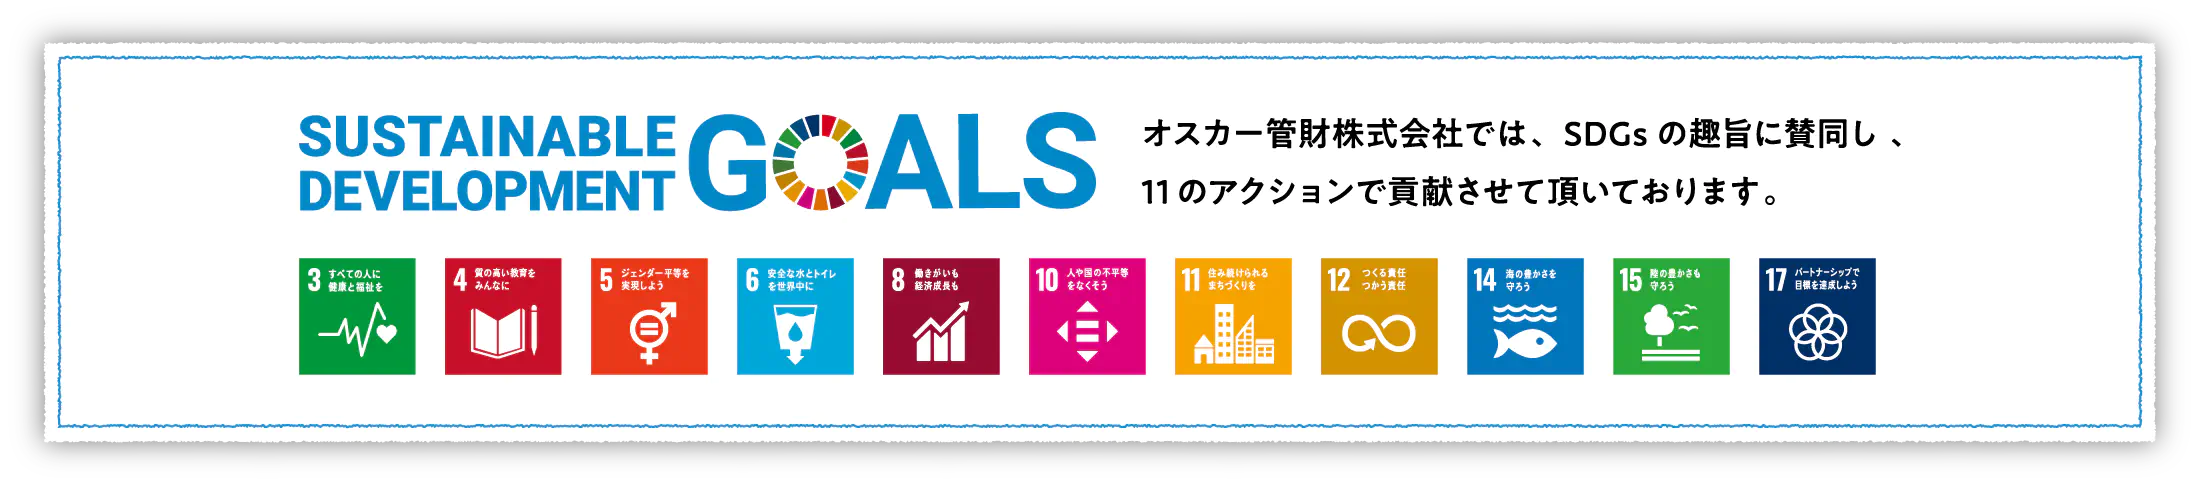 オスカー管財株式会社では、SDGsの趣旨に賛同し、2つのアクションで貢献させて頂いております。